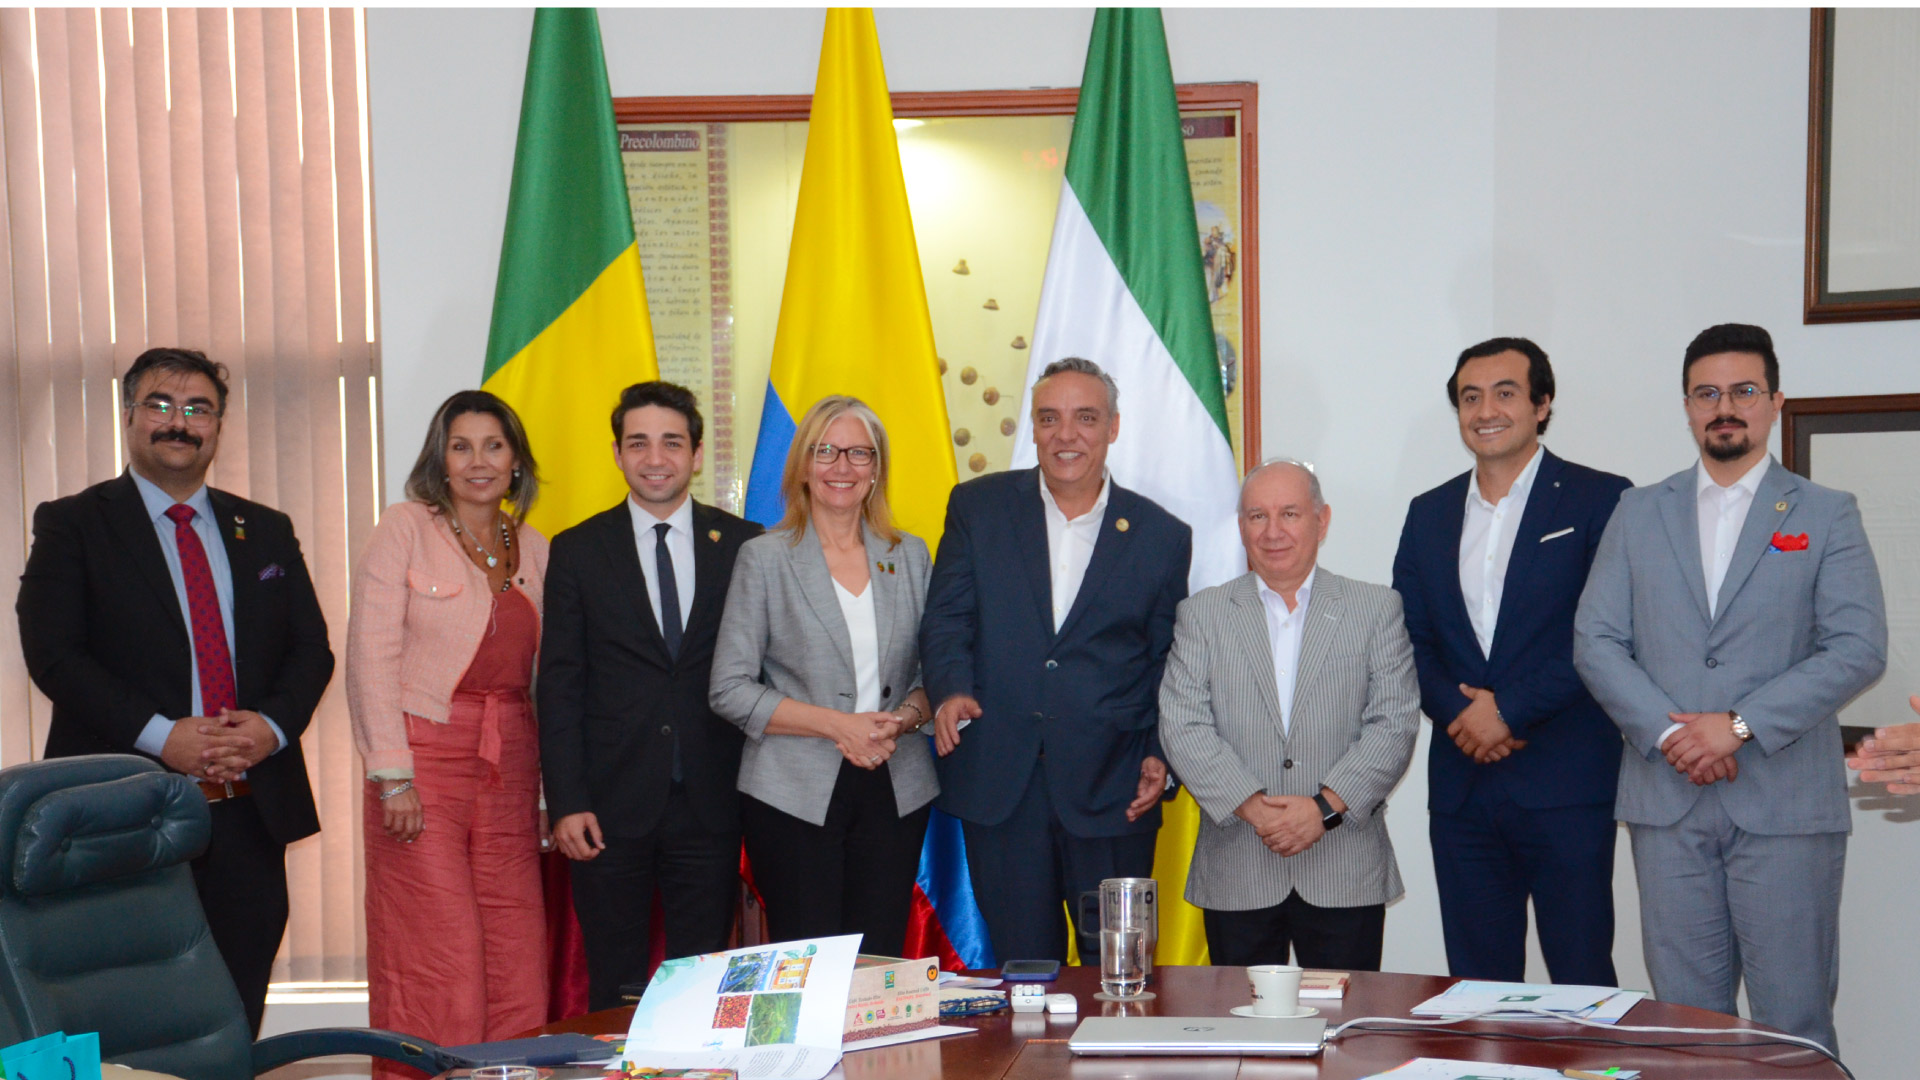 Universidades de Ankara de Turquía y del Quindío oficializaron convenio de cooperación por intermedio de la embajada turca en Colombia